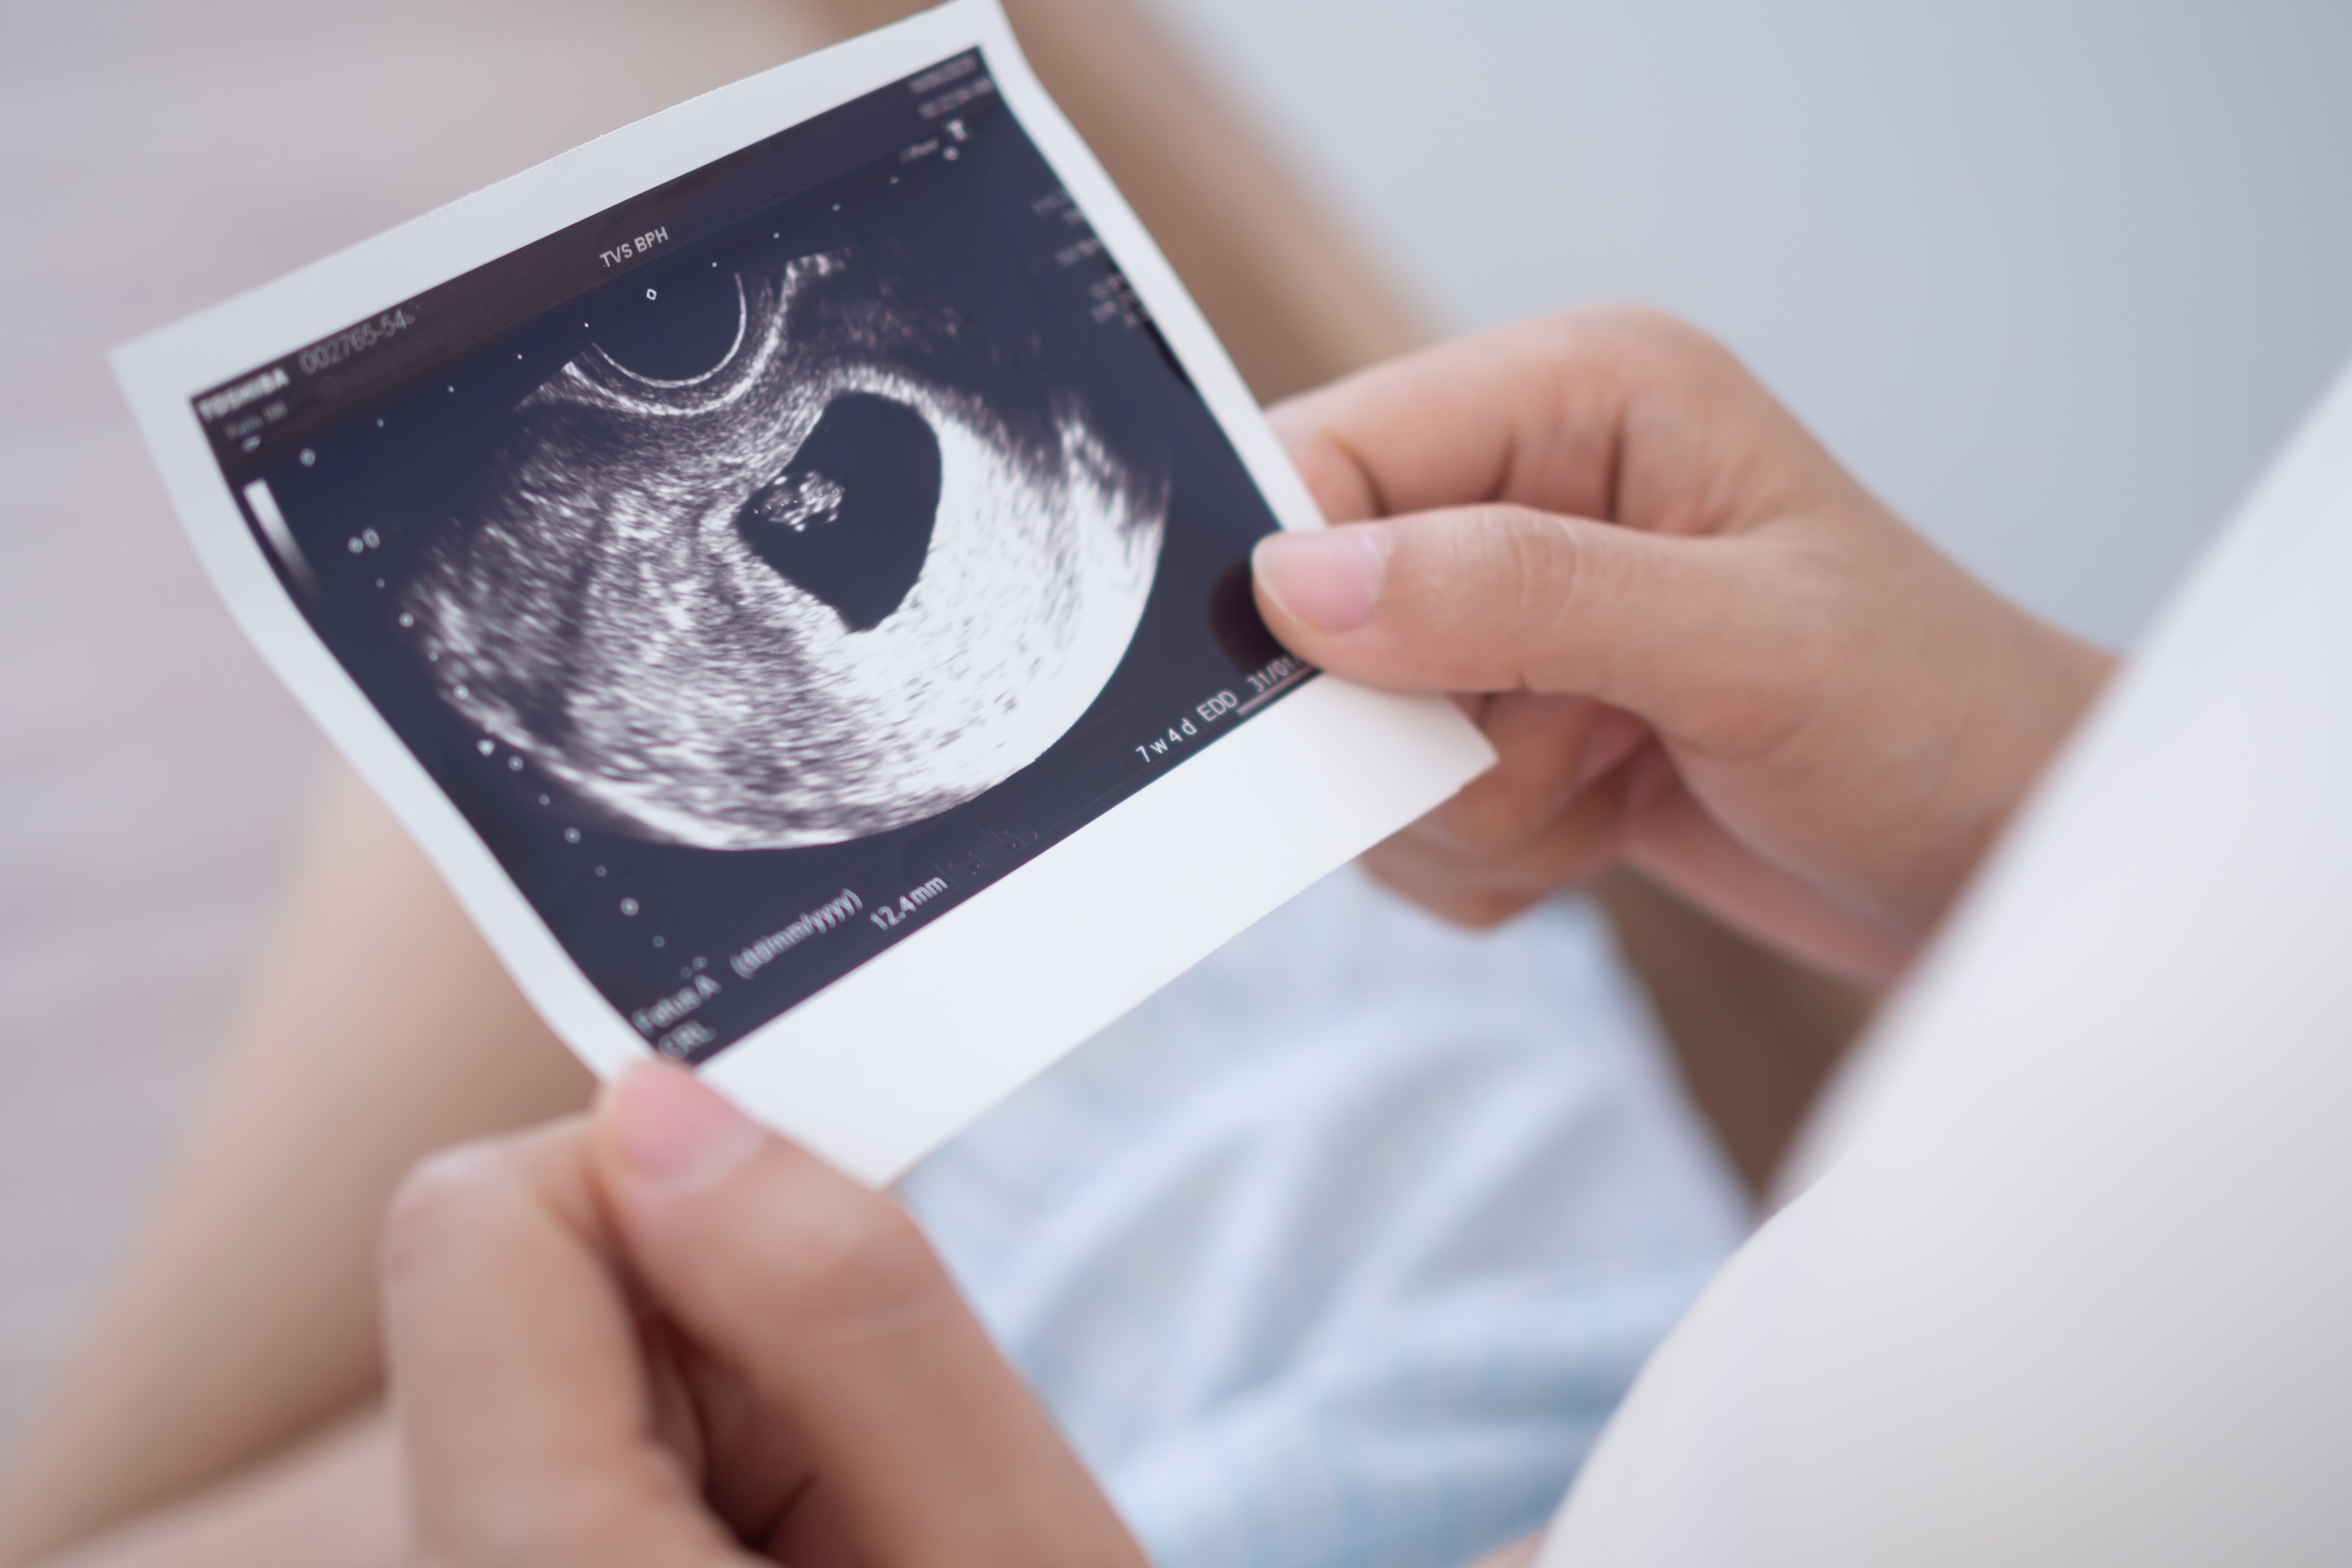 An ultrasound scan | Source: Shutterstock